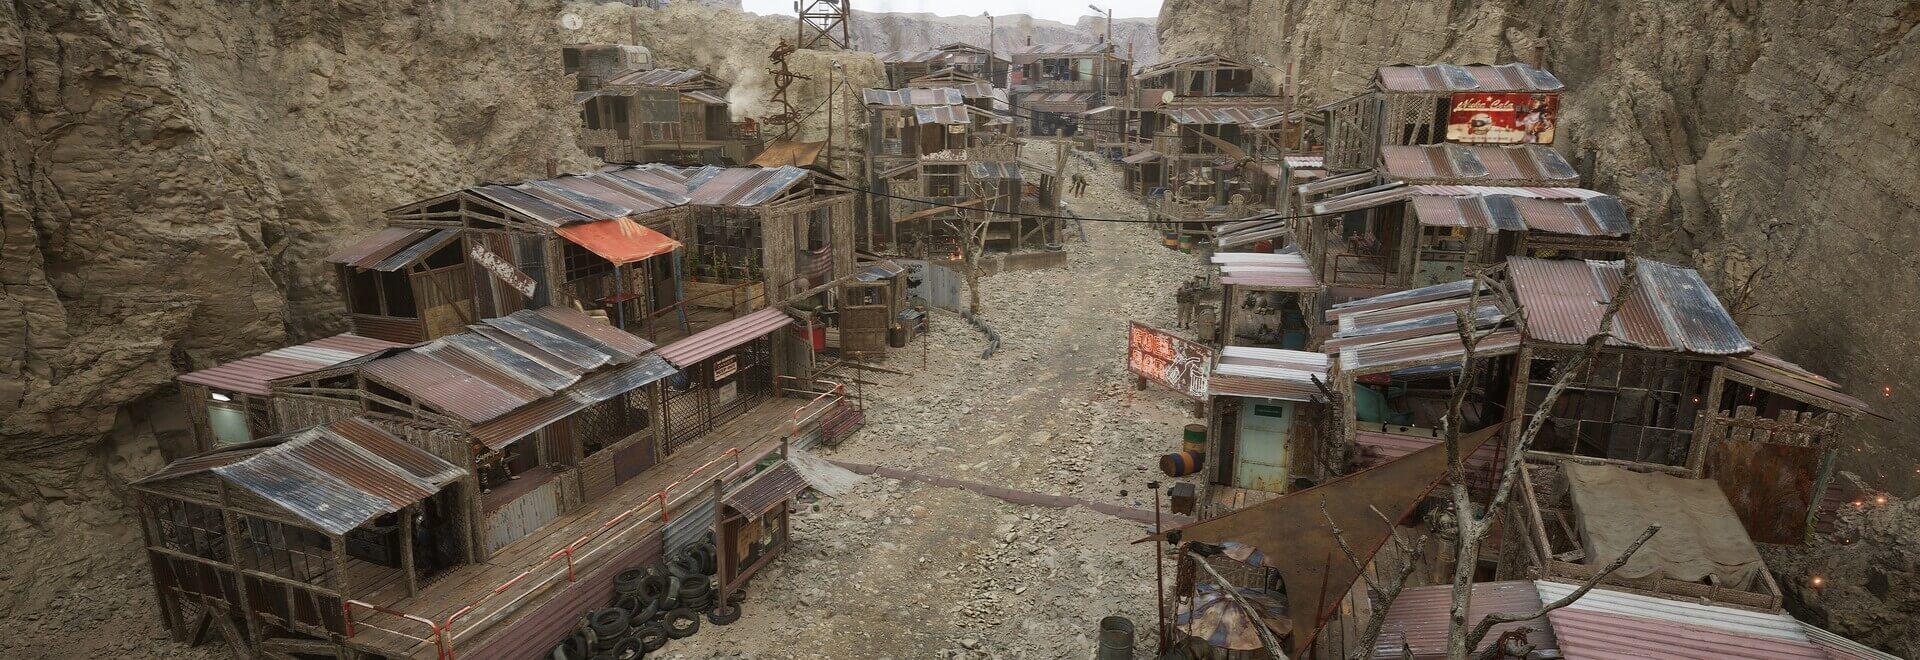 Obrázok z fanúšikovského remaku Fallout 4.